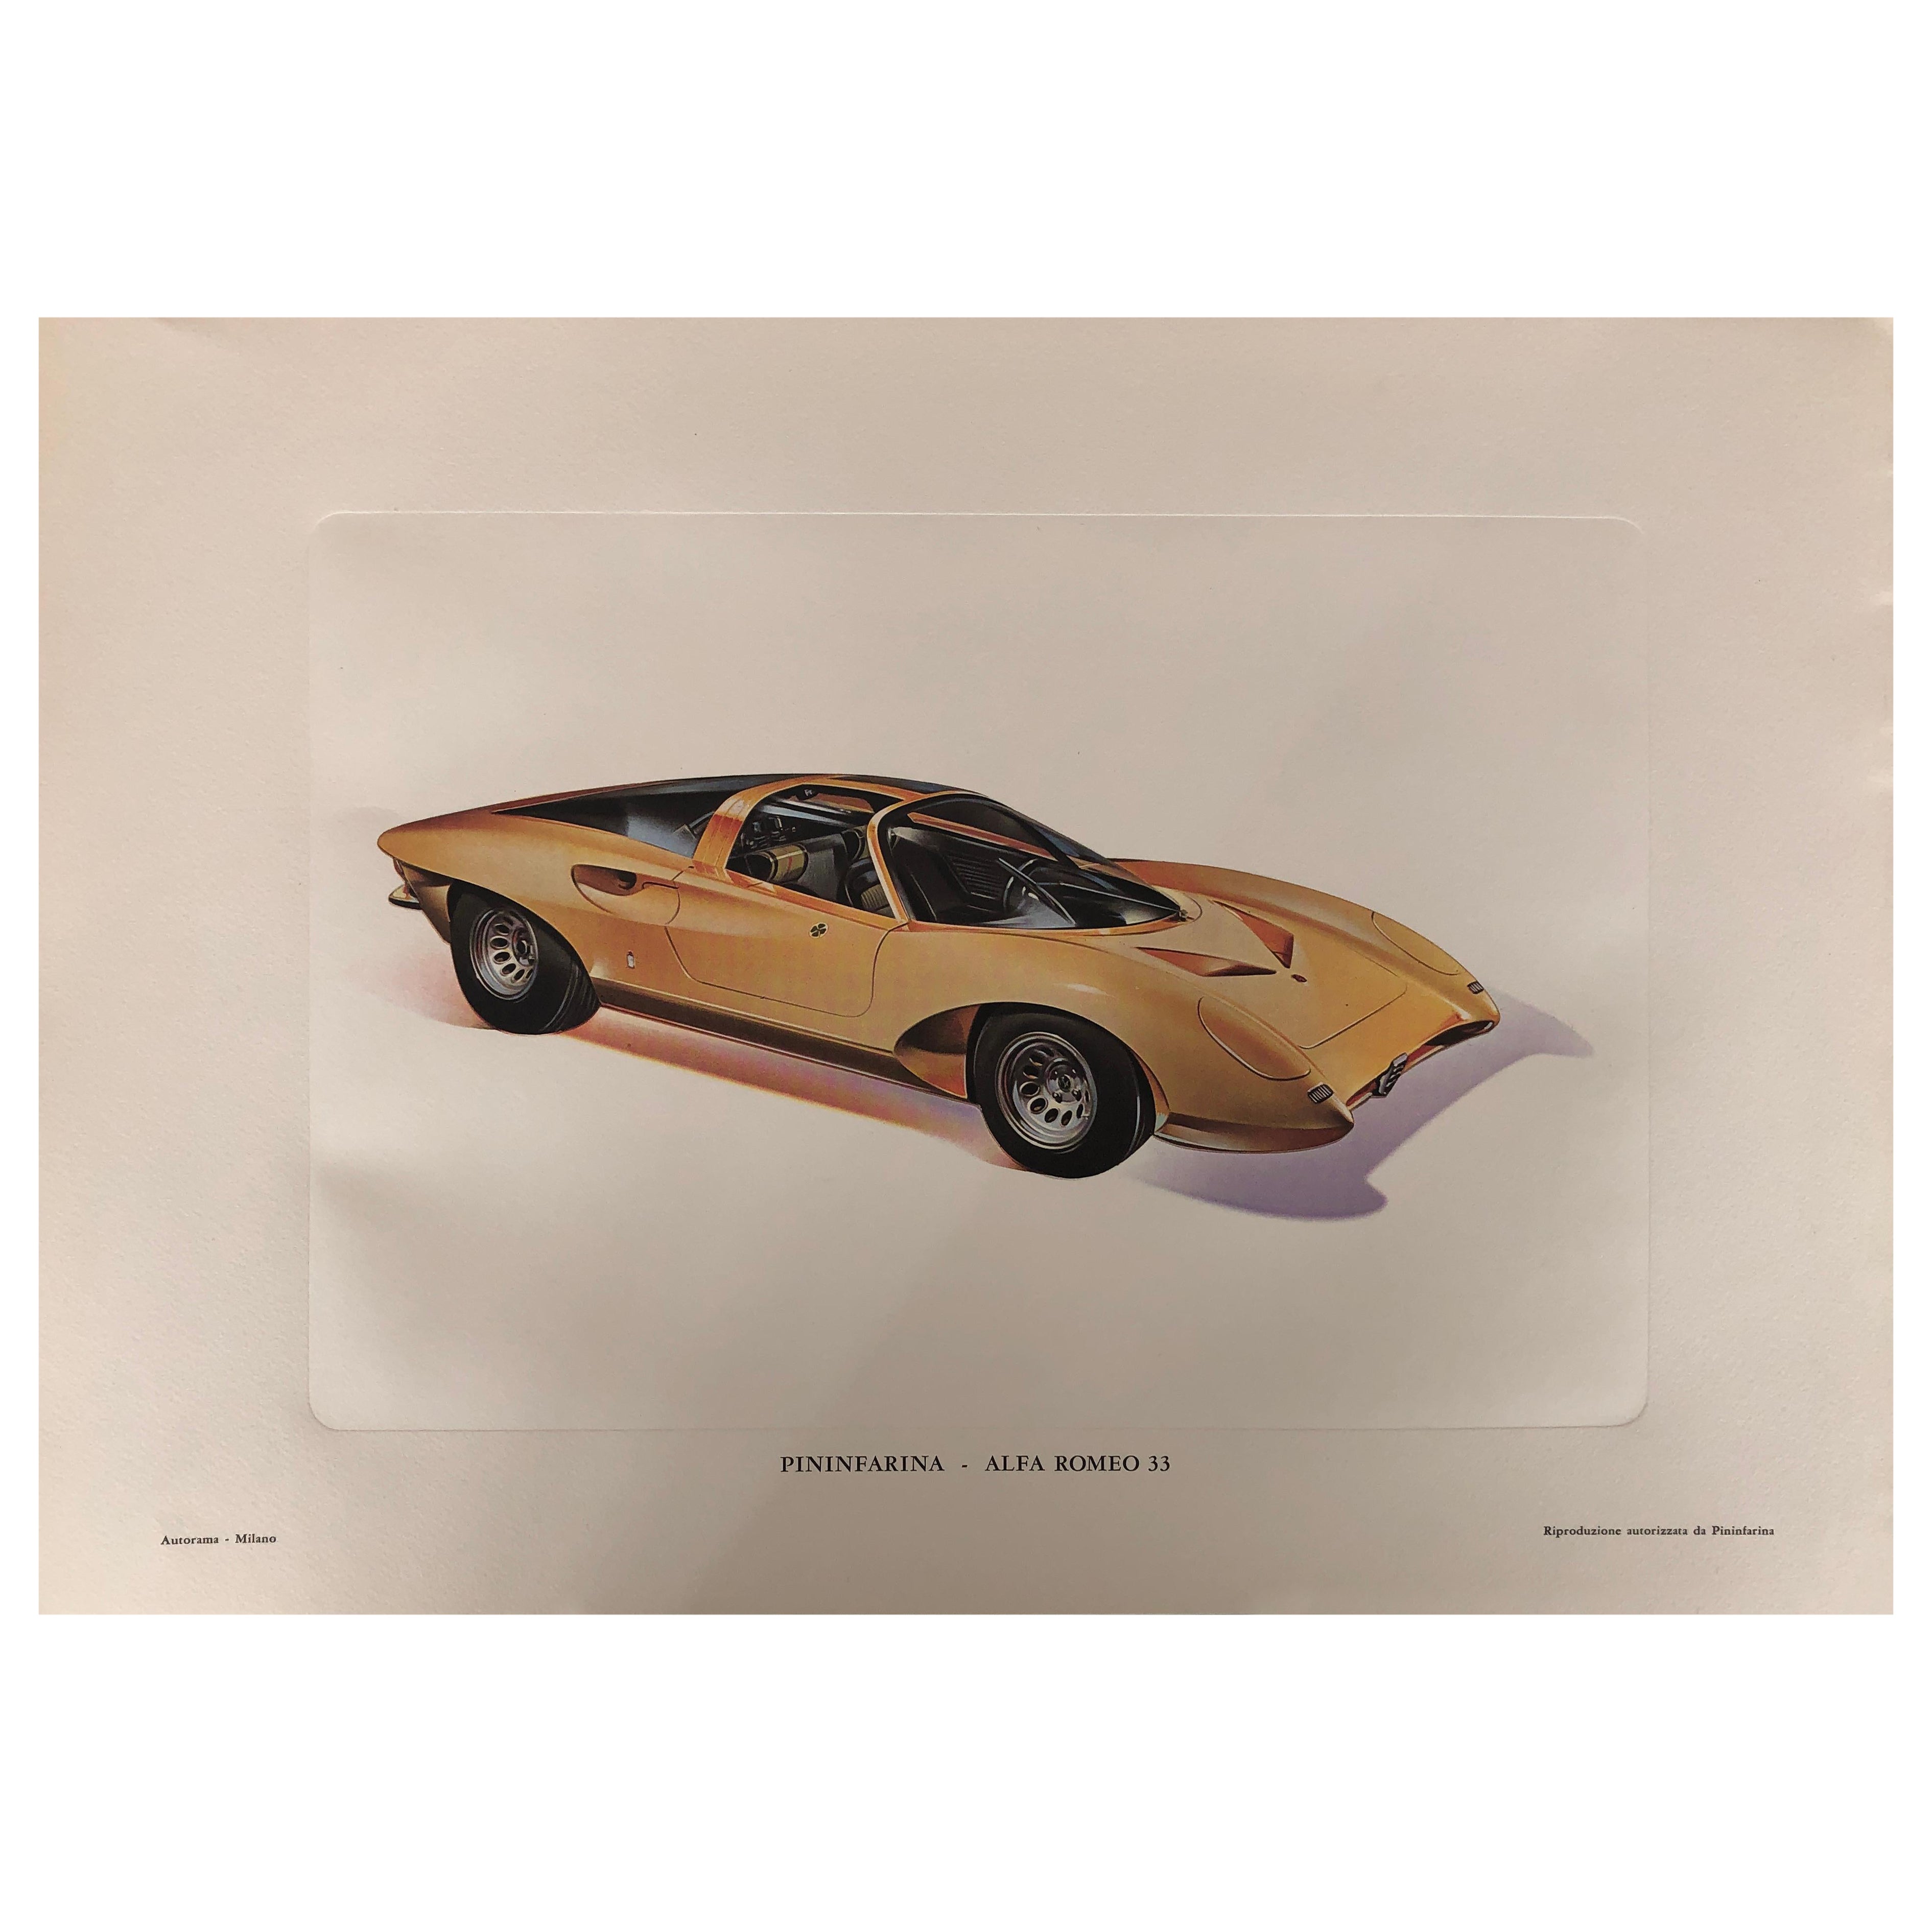 Pininfarina Cars Print 